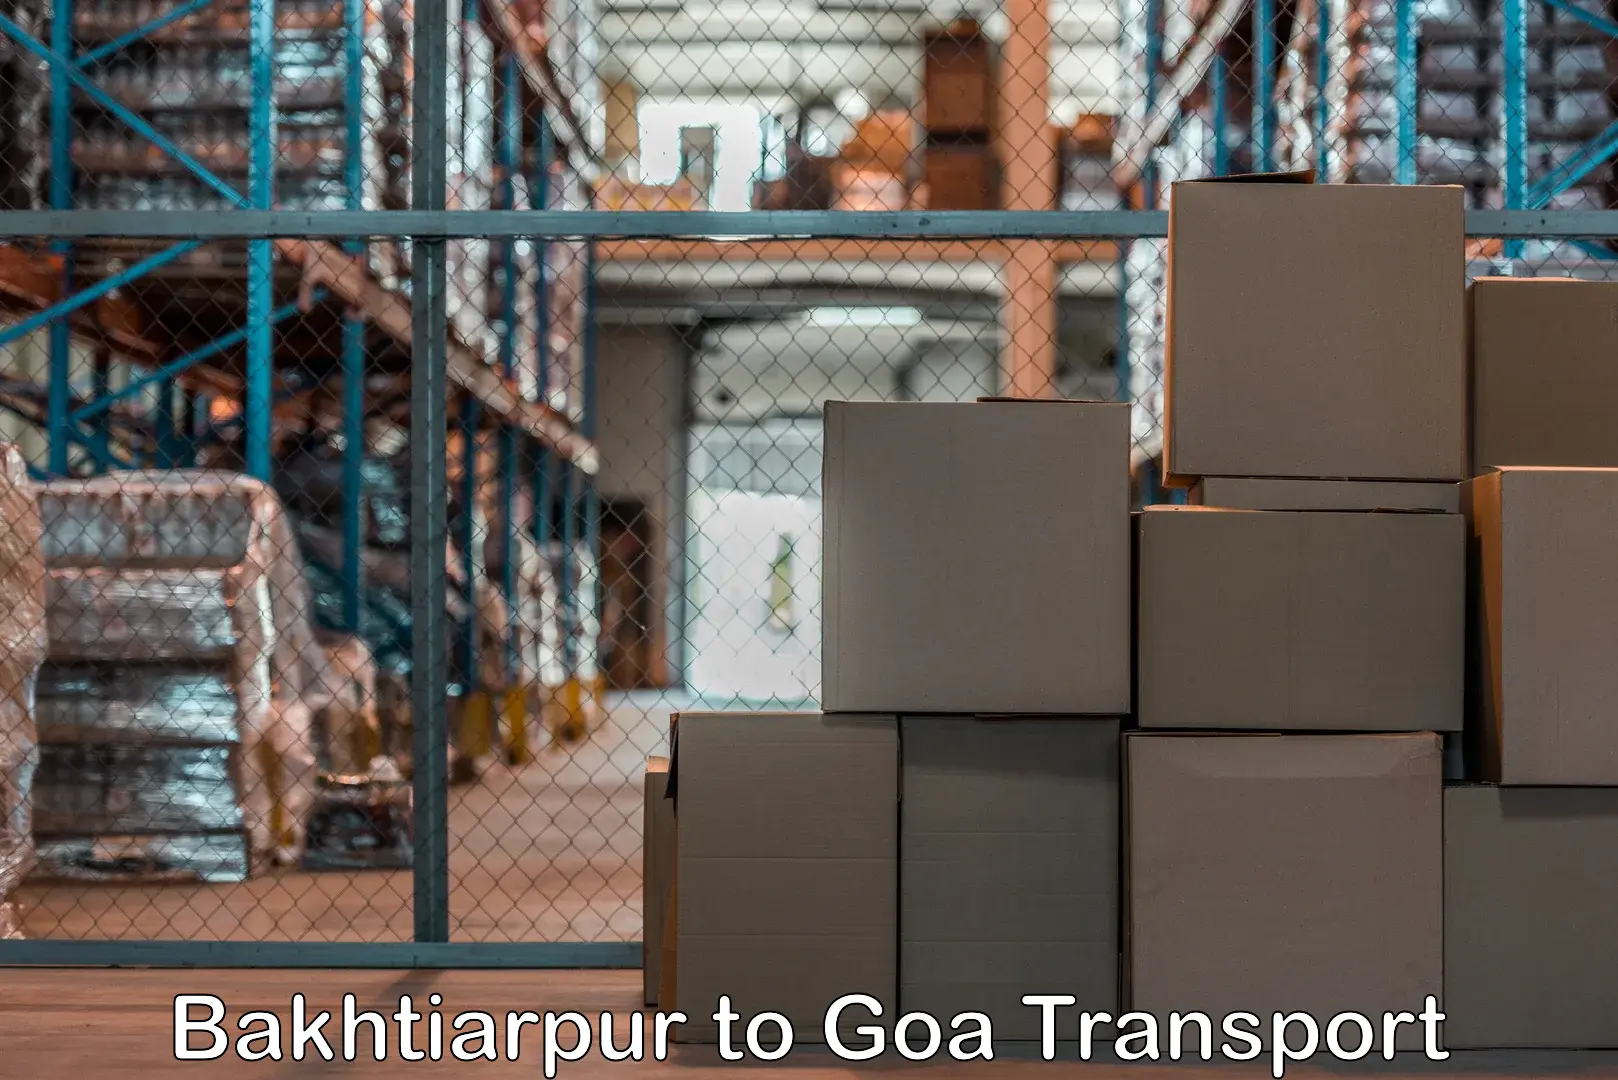 Parcel transport services Bakhtiarpur to Goa